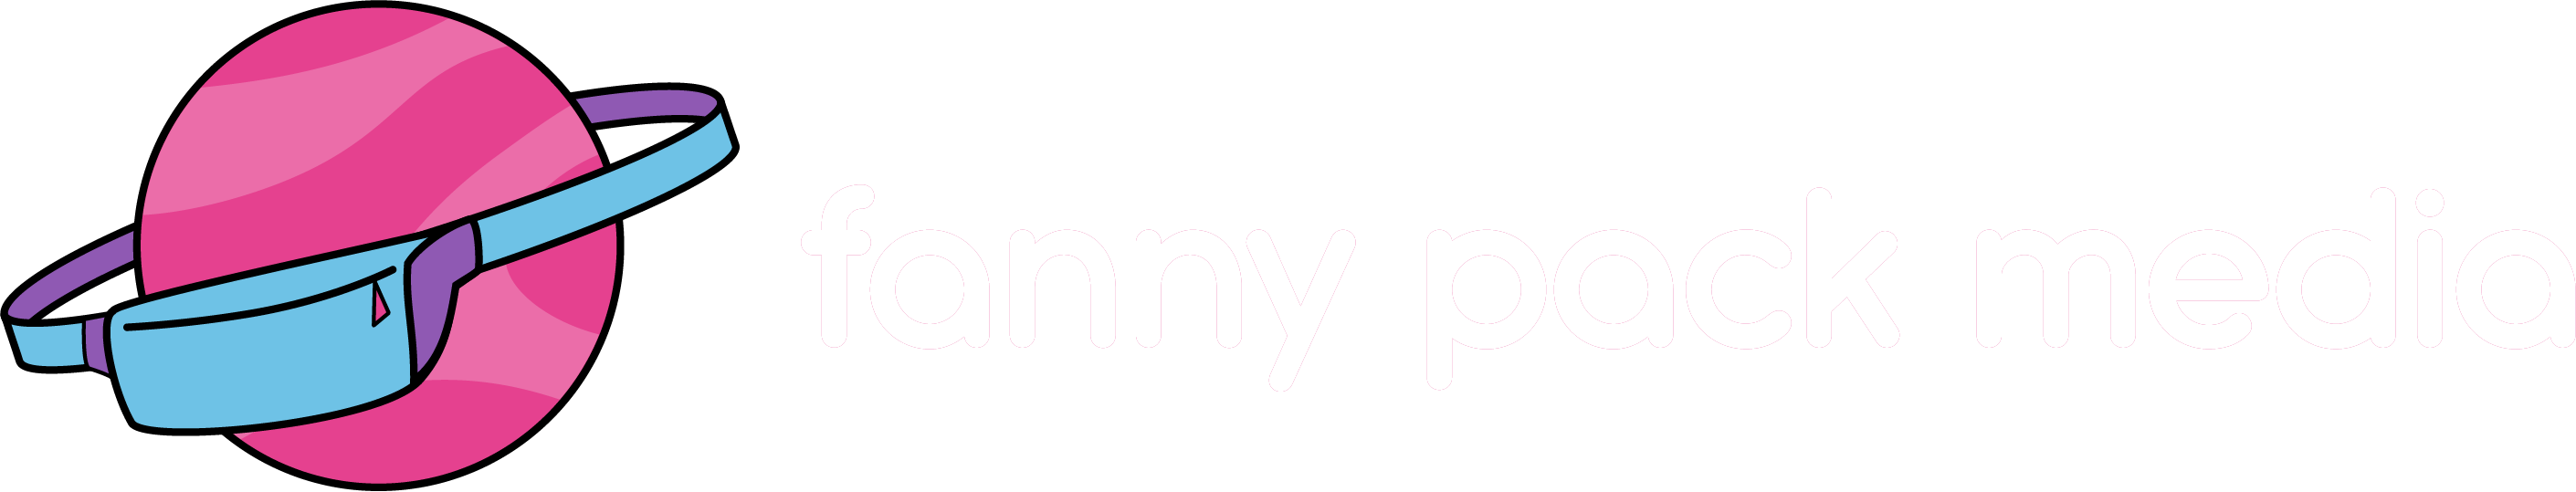 Fanny Pack Media